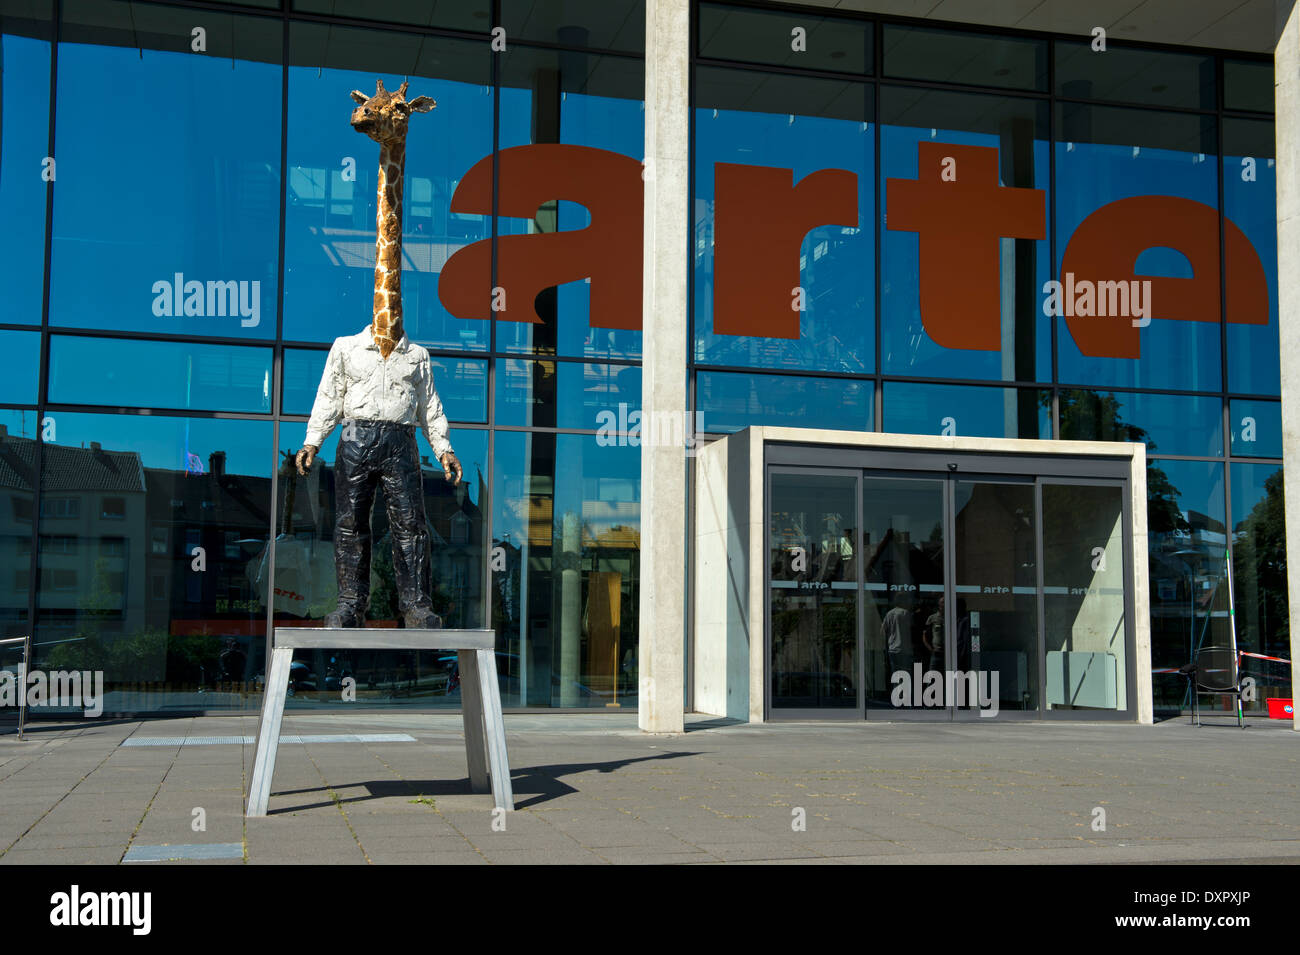 Sculpture Homme-Giraffen-von Stefan Balkenhol am Sitz der der deutsch-französischen Fernsehsender ARTE, Straßburg, Elsass, Frankreich Stockfoto